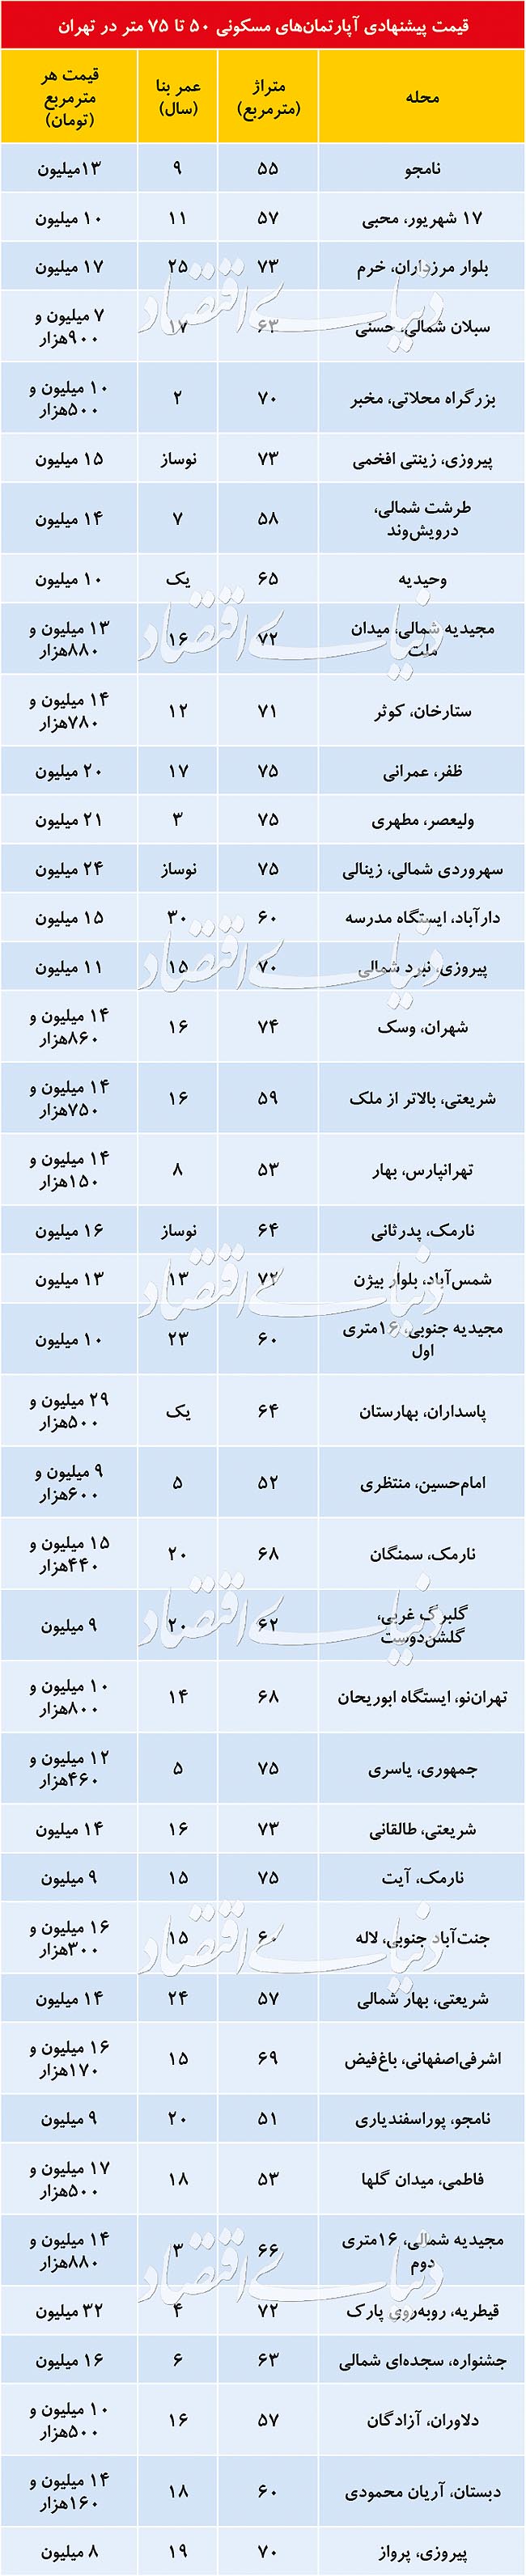 قیمت پیشنهادی آپارتمان های مسکونی 50 تا 75 متر در تهران